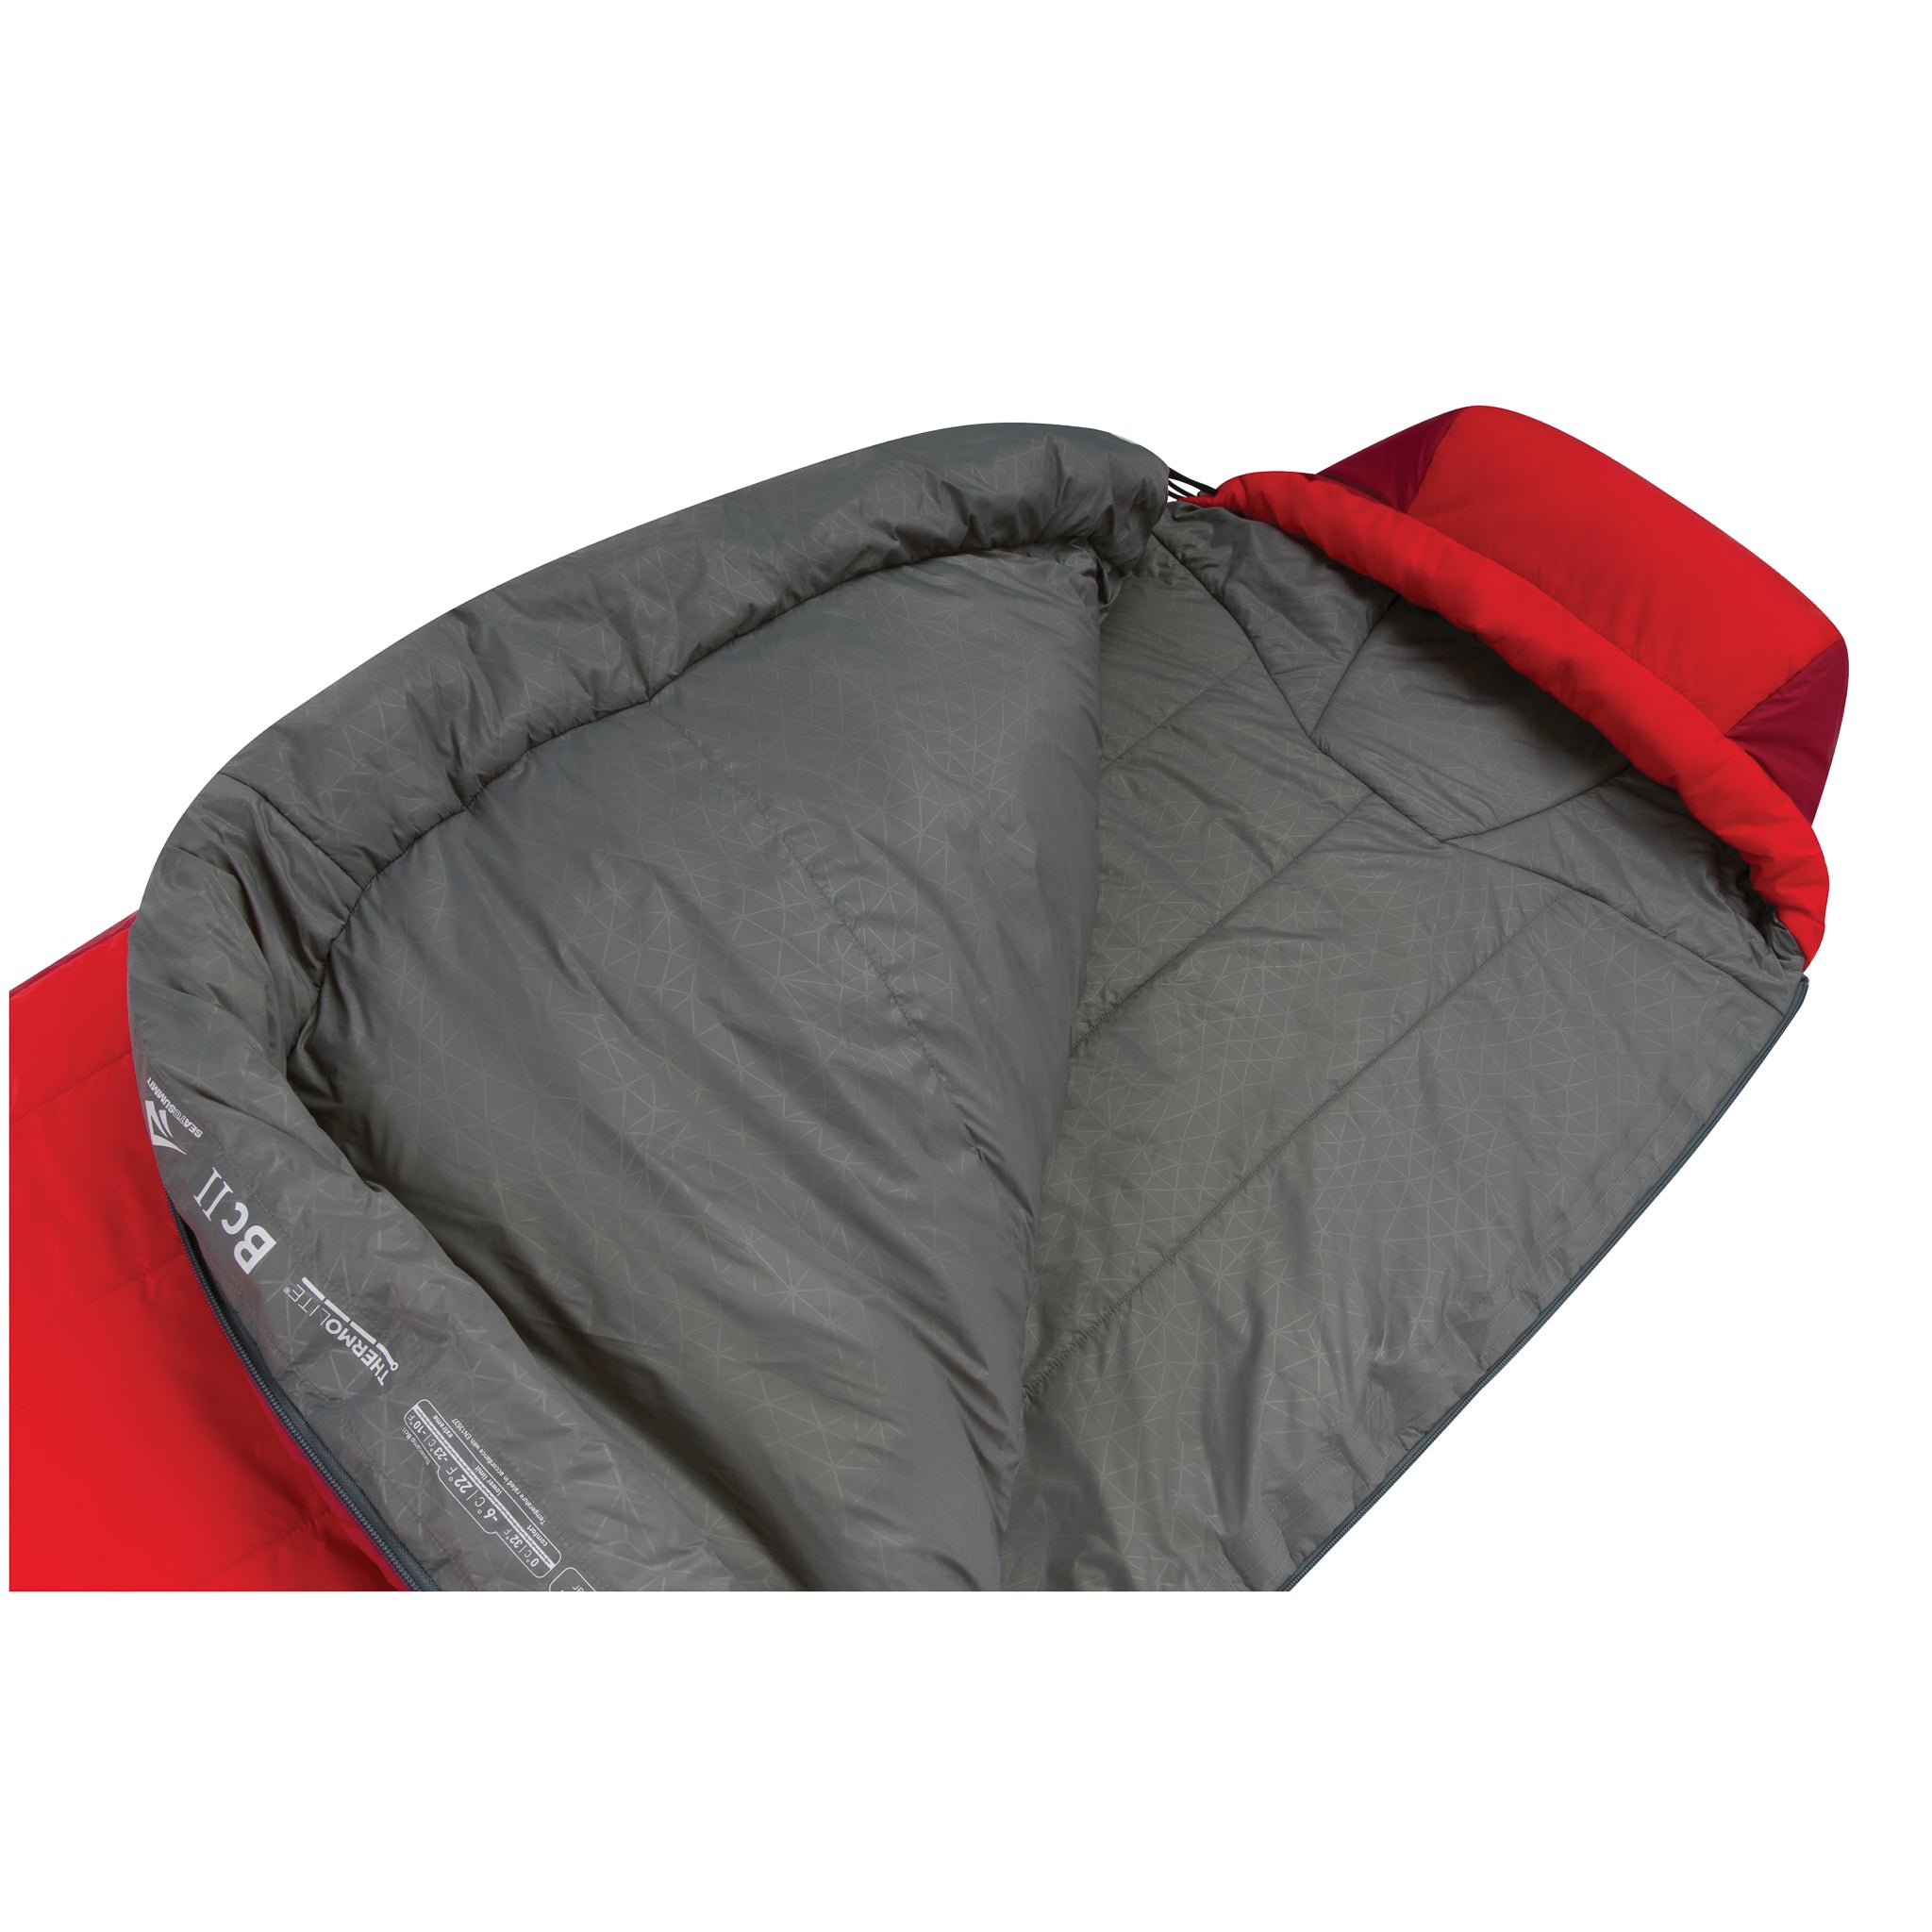 Description || Synthetic Sleeping Bag Camping